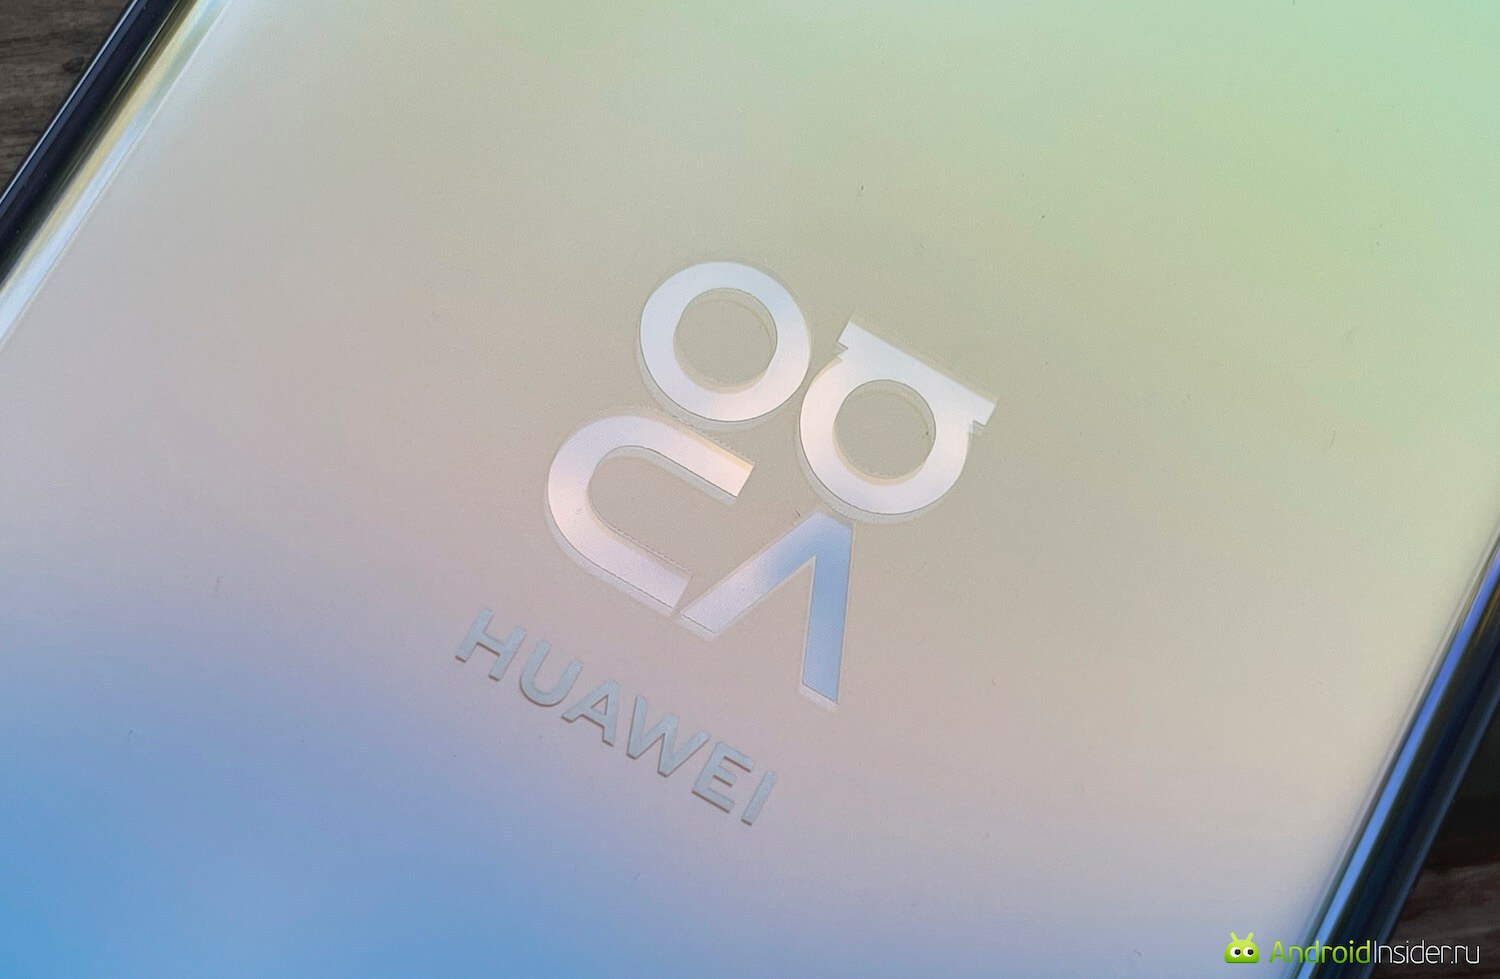 Опыт использования Huawei Nova 8. Попробуйте прочитать этот логотип линейки. Не так просто, да? Фото.